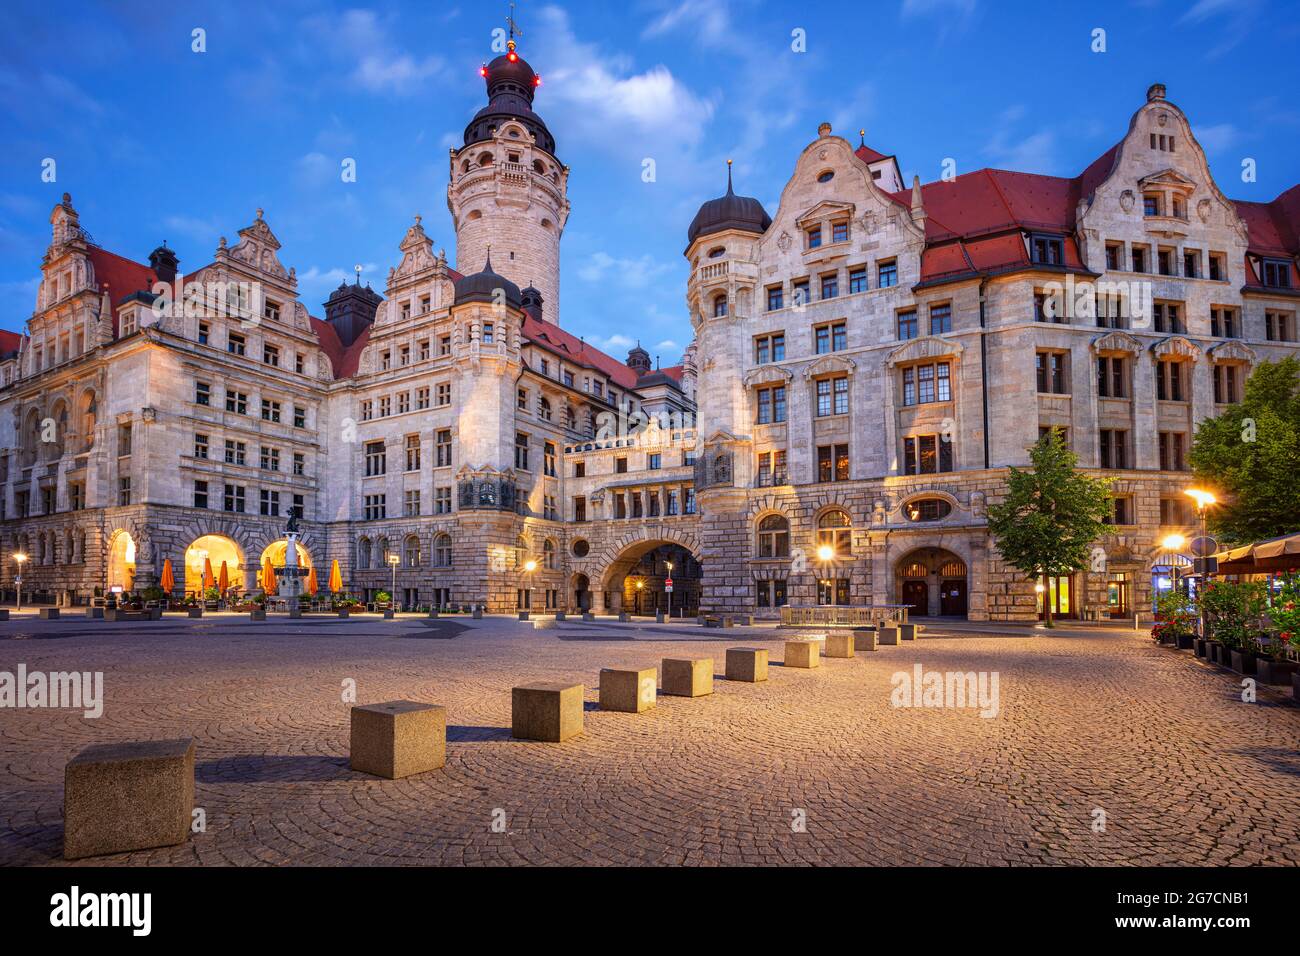 Lipsia, Germania. Immagine del paesaggio urbano di Lipsia, Germania con il nuovo municipio all'ora blu del crepuscolo. Foto Stock